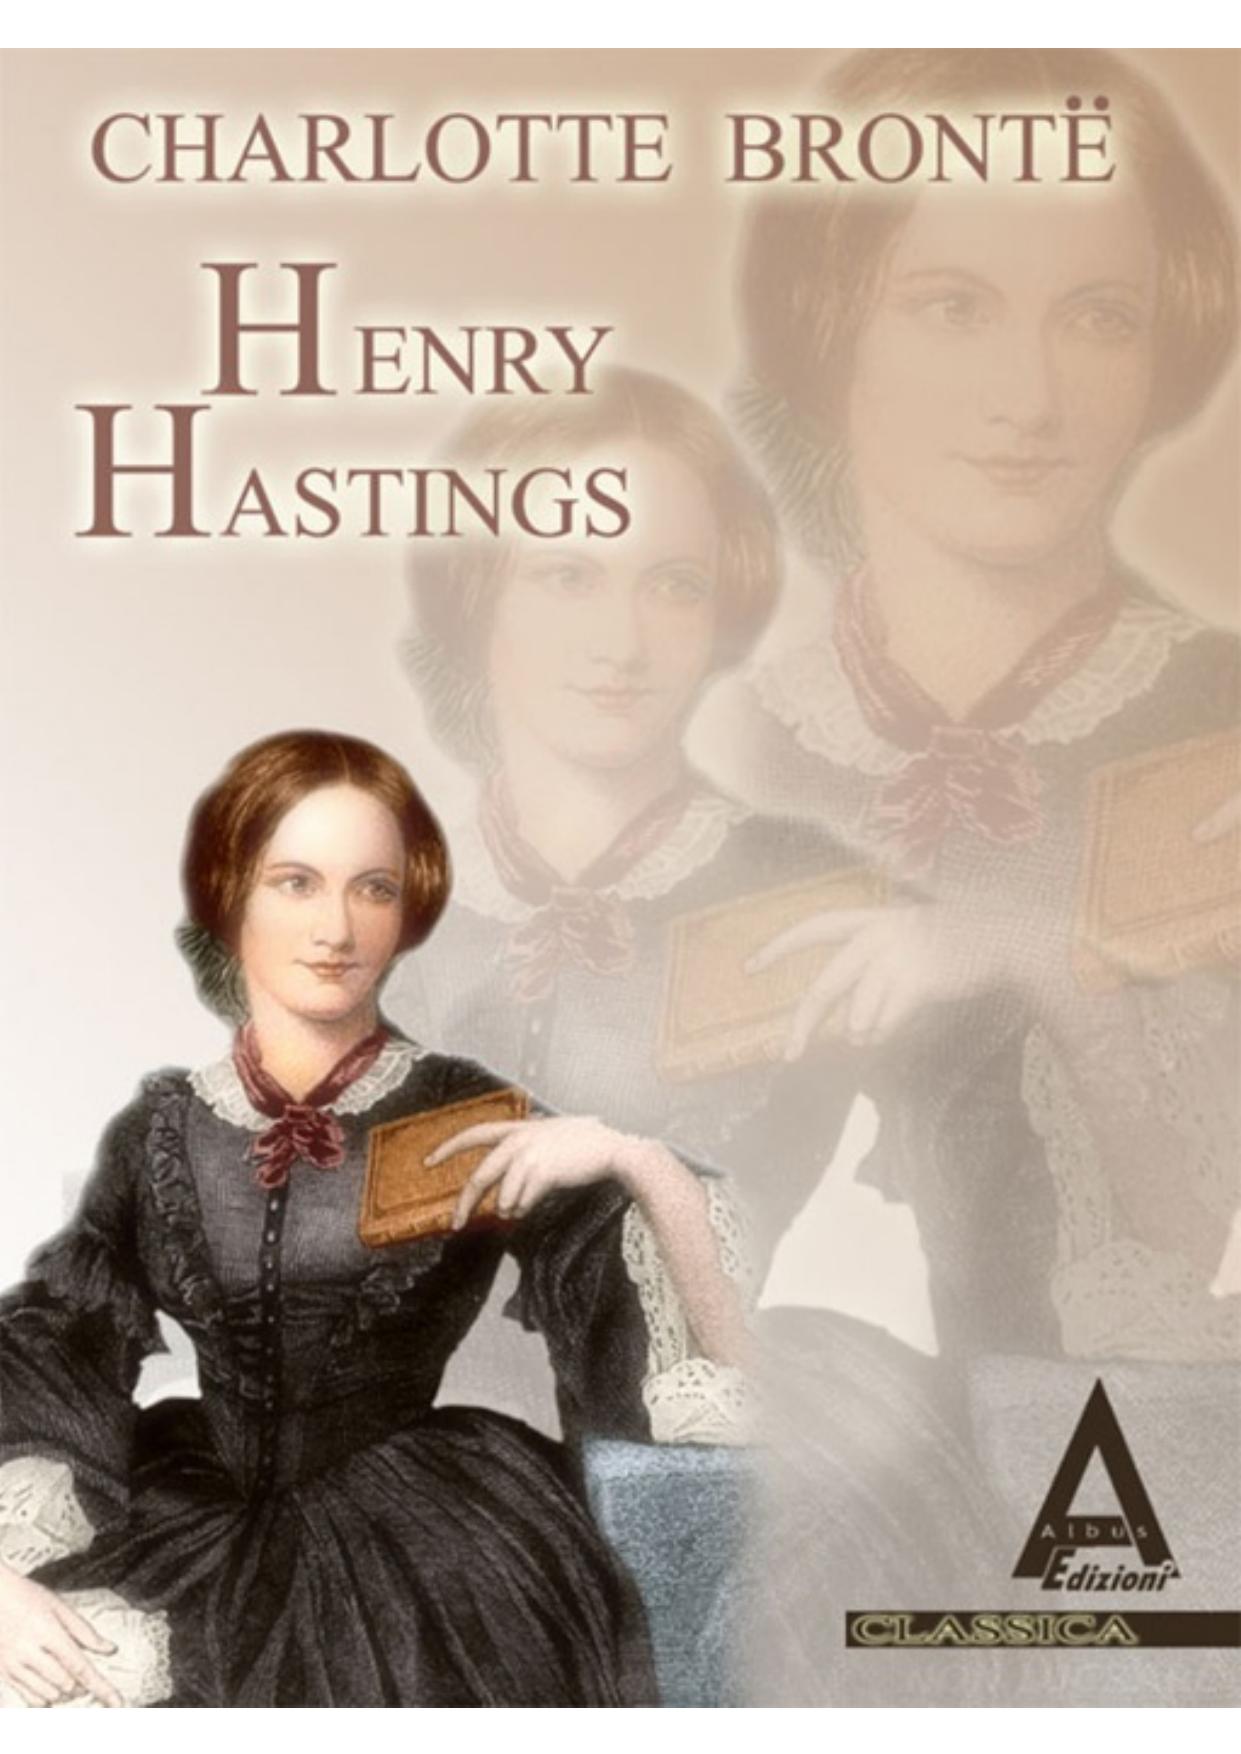 Henry Hastings by Charlotte Brontë